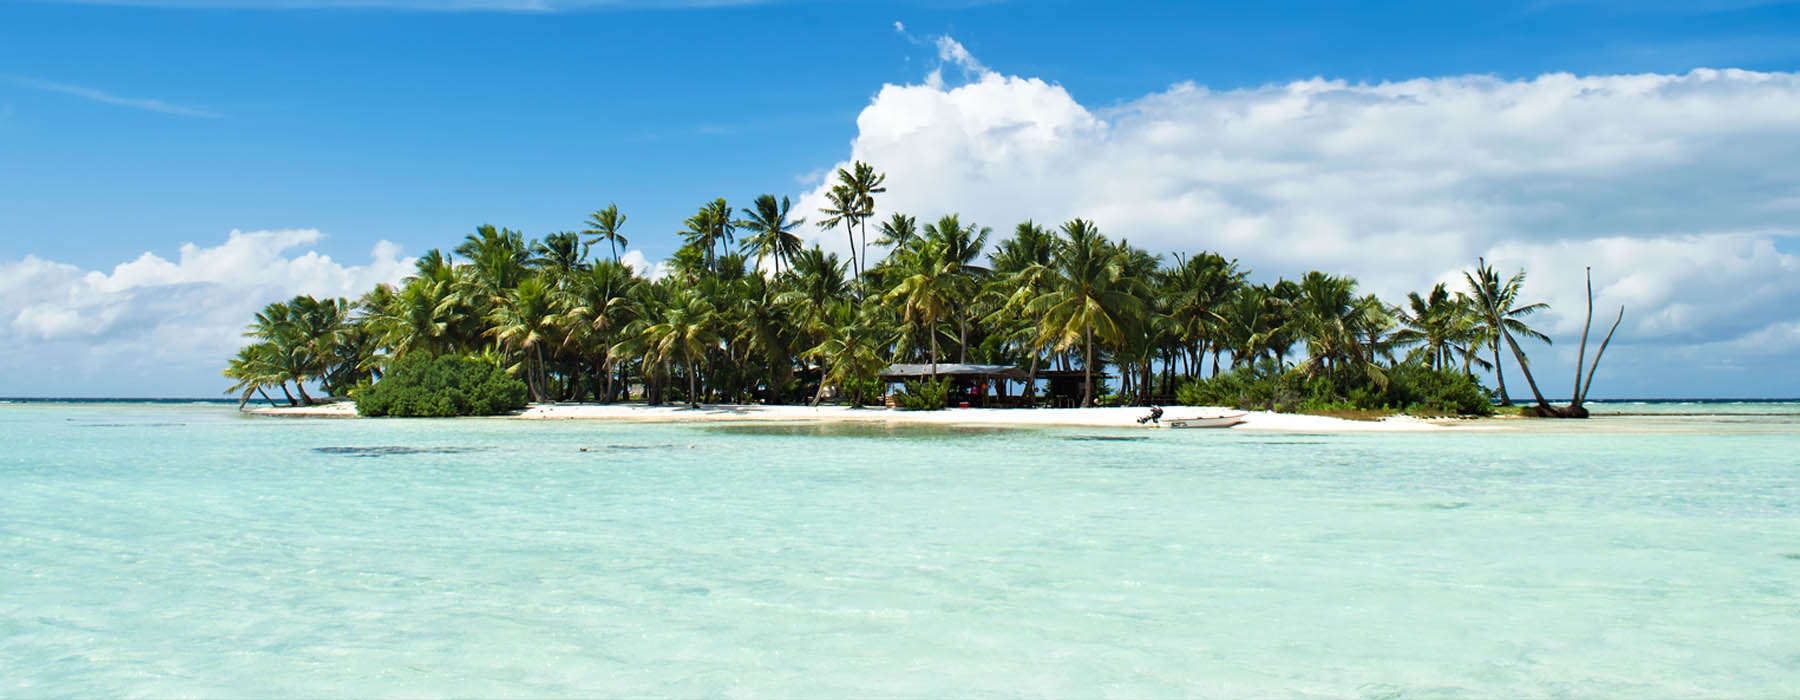 LR-Destination-polynesie